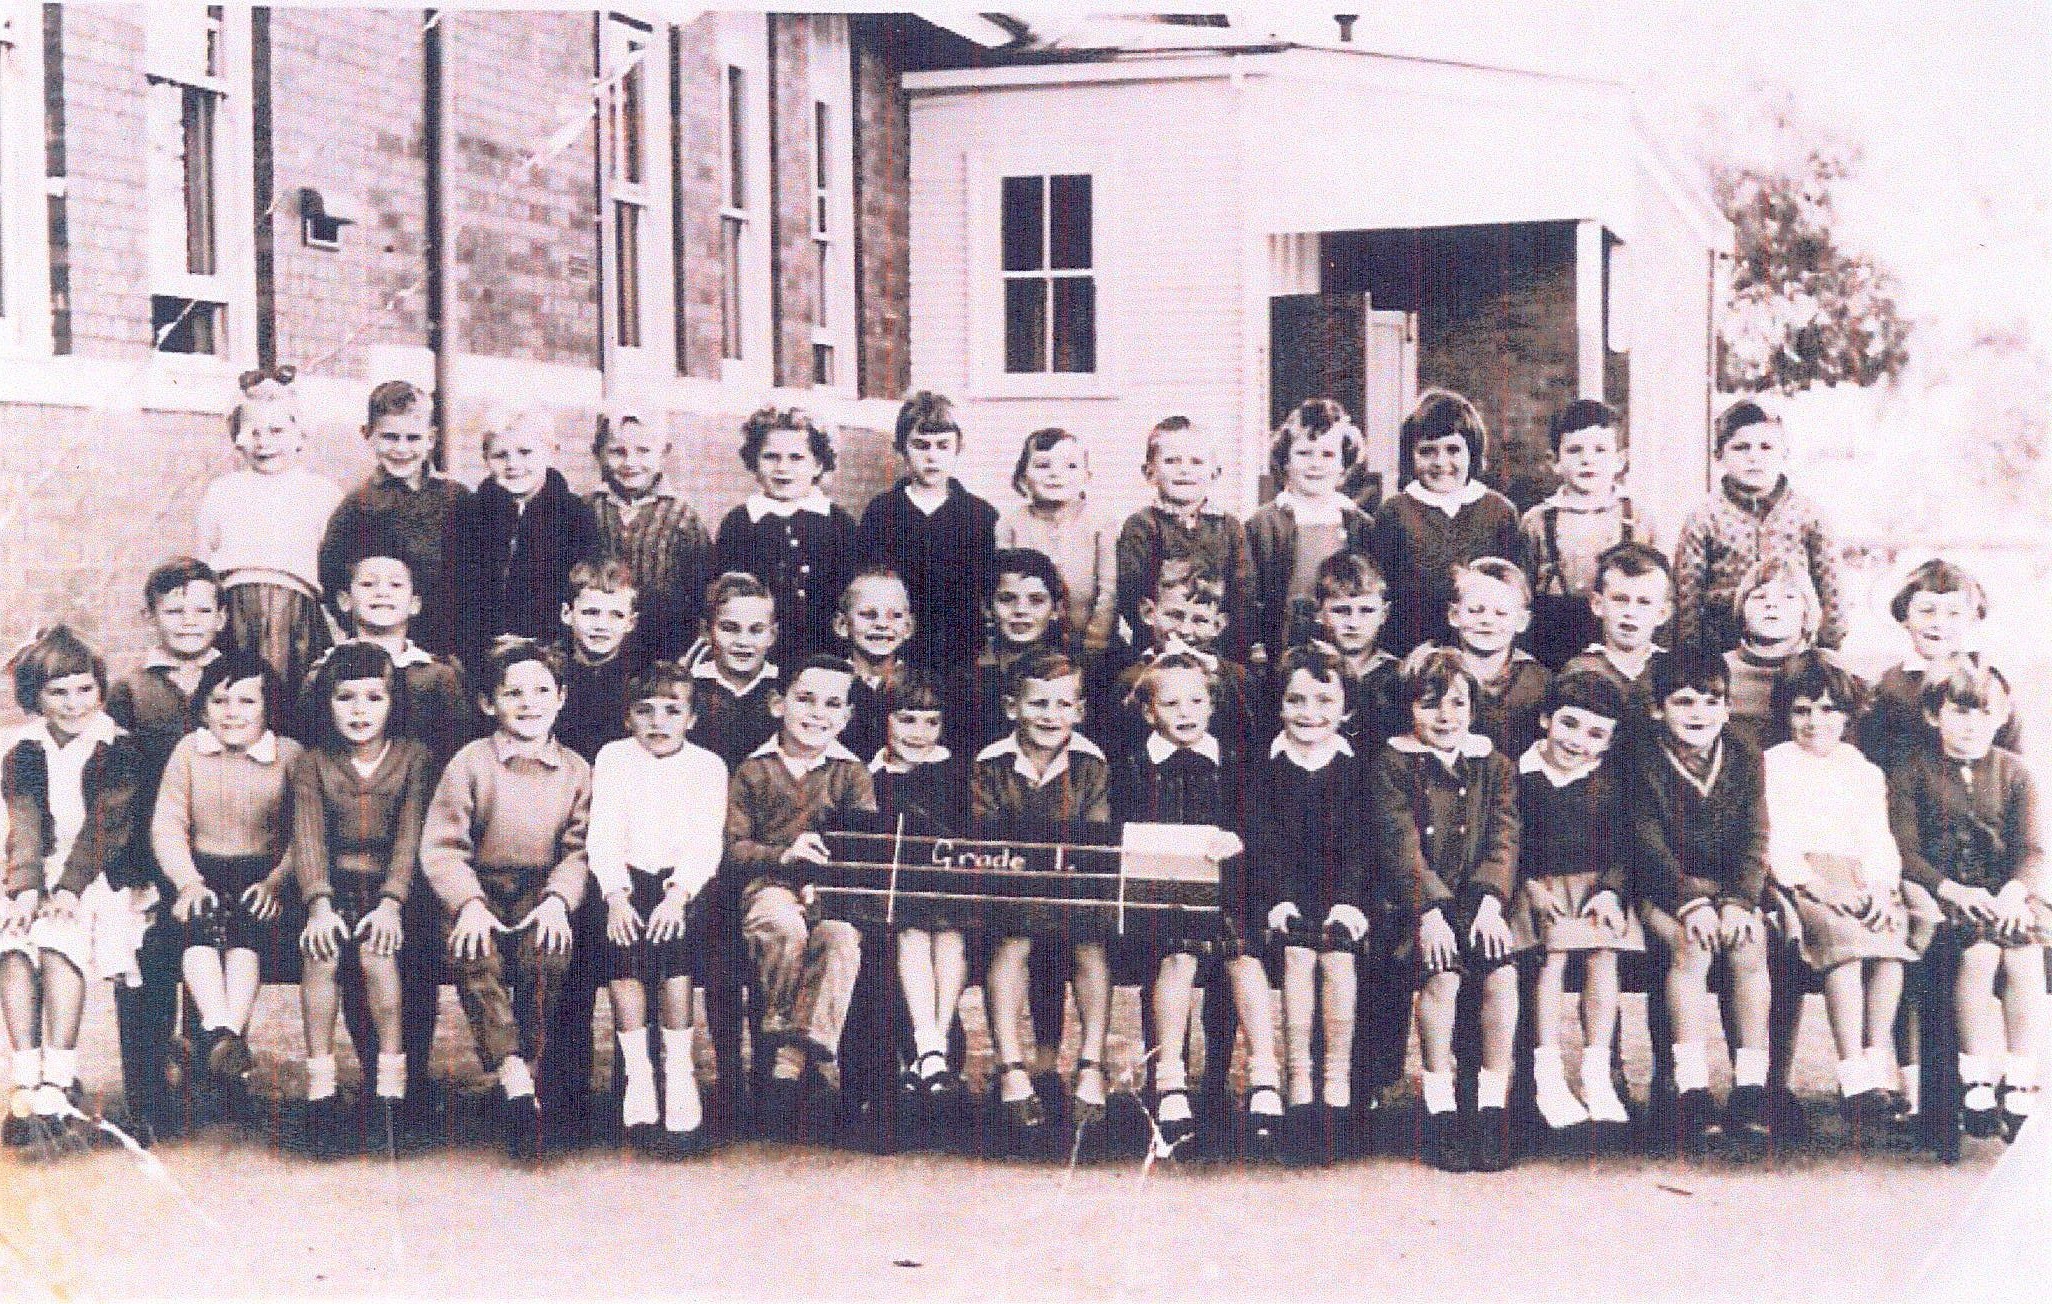 North Kalgoorlie Primary School Grade 1 1962